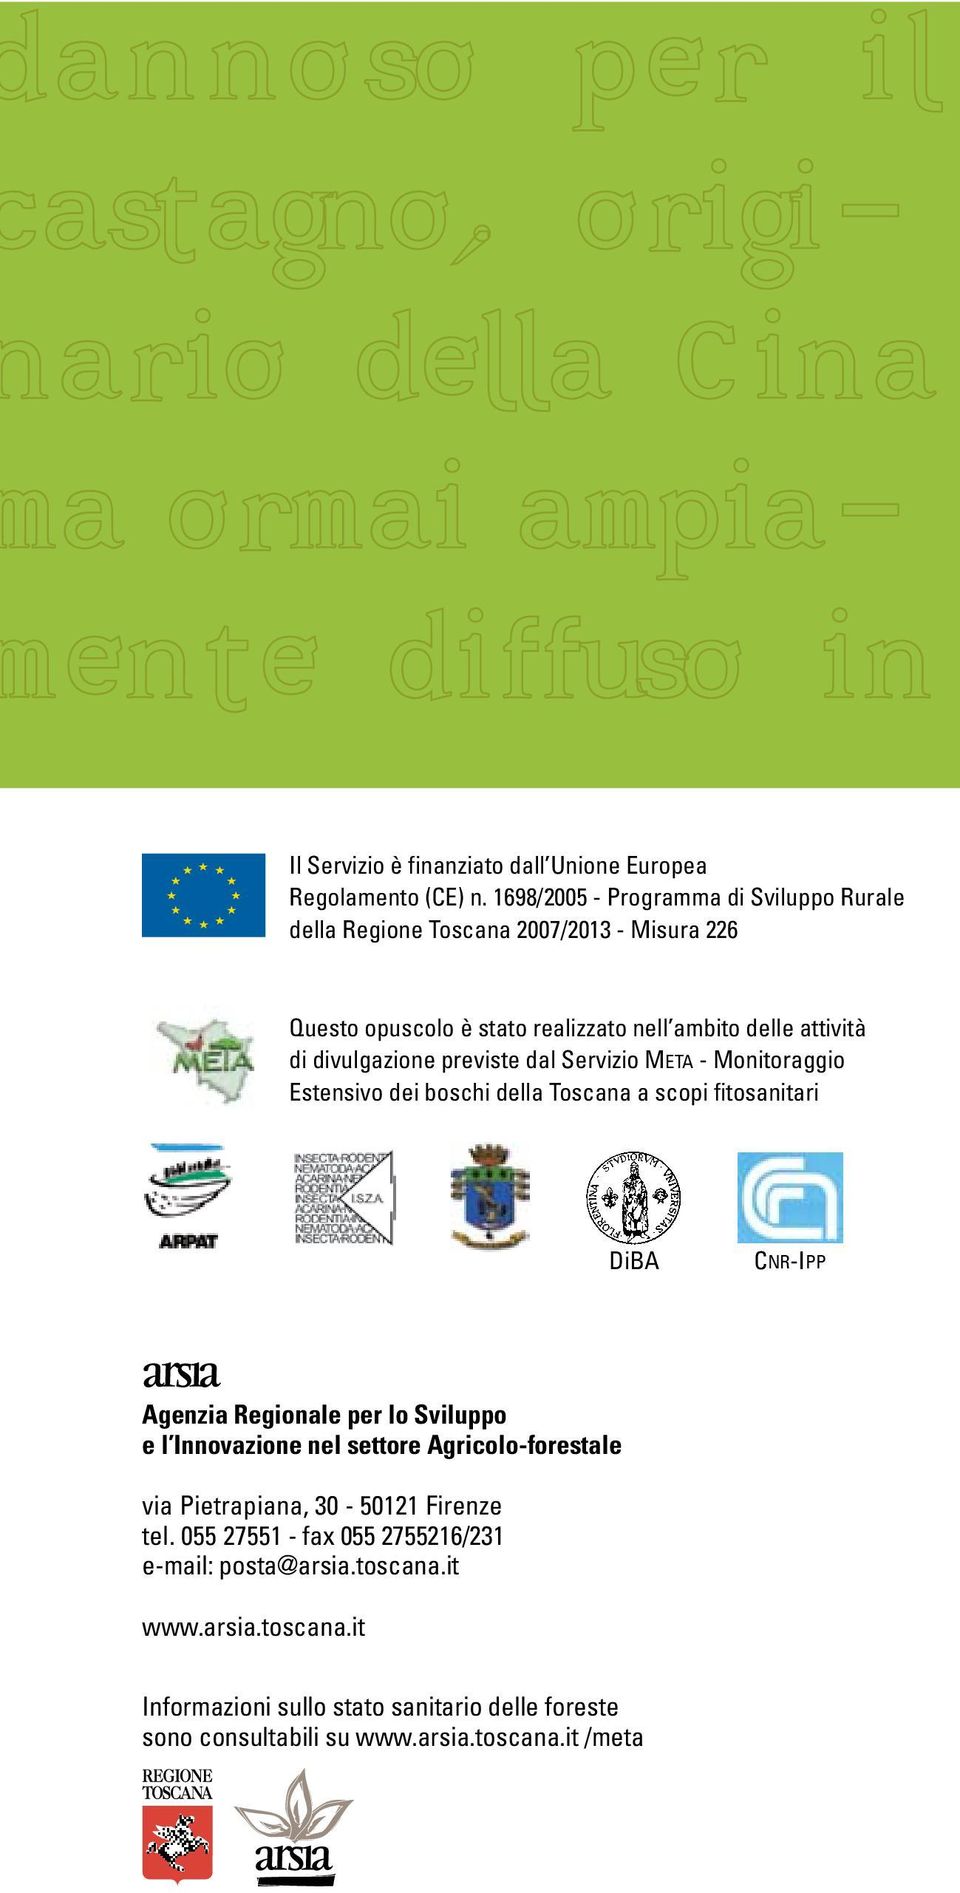 divulgazione previste dal Servizio META - Monitoraggio Estensivo dei boschi della Toscana a scopi fitosanitari DiBA CNR-IPP Agenzia Regionale per lo Sviluppo e